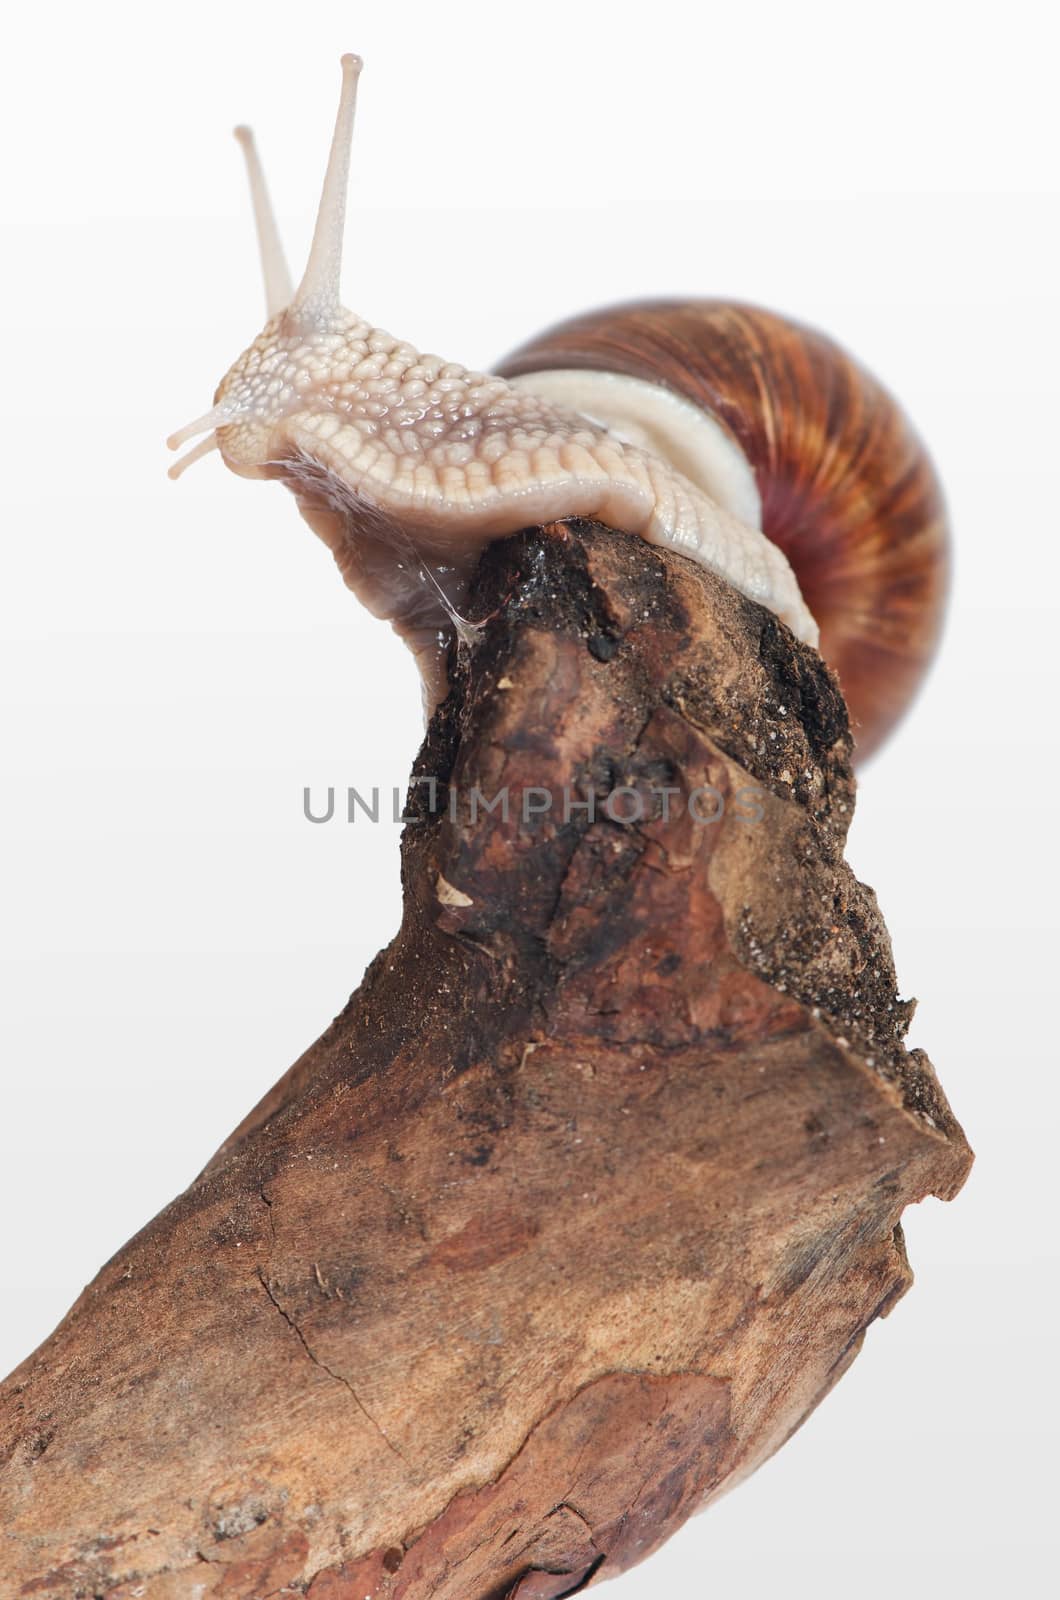 Animal: Snail on a branch by morskaja